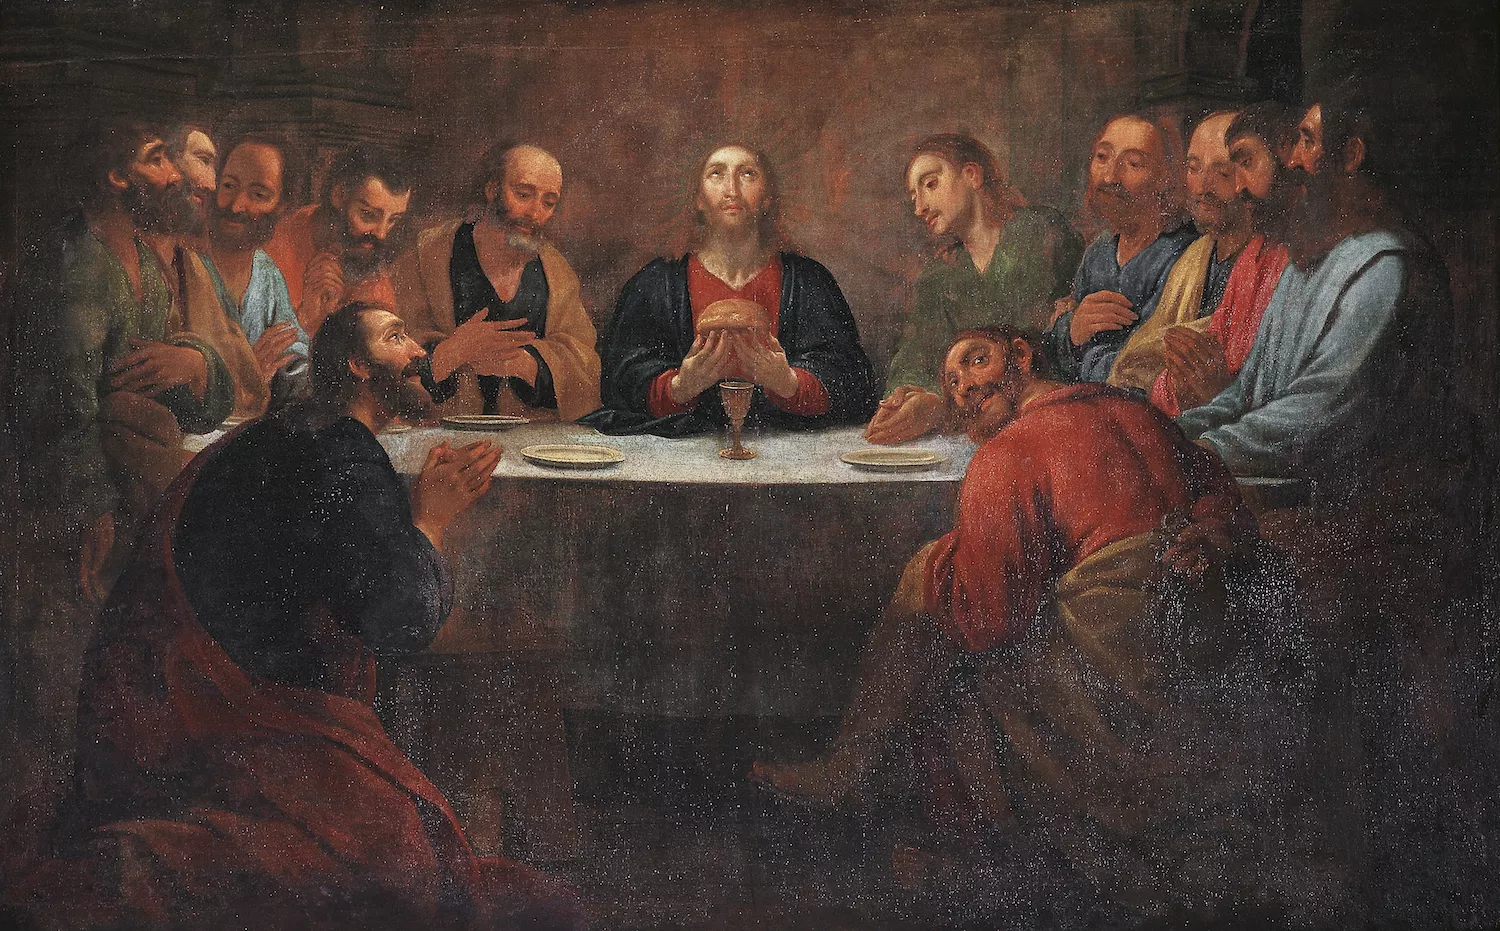 Viladomat va guanyar una gran reputació com a pintor d’obres religioses. Exemple d'això és la pintura del Sant Sopar, que avui es conserva al Museu Diocesà i Comarcal de Lleida